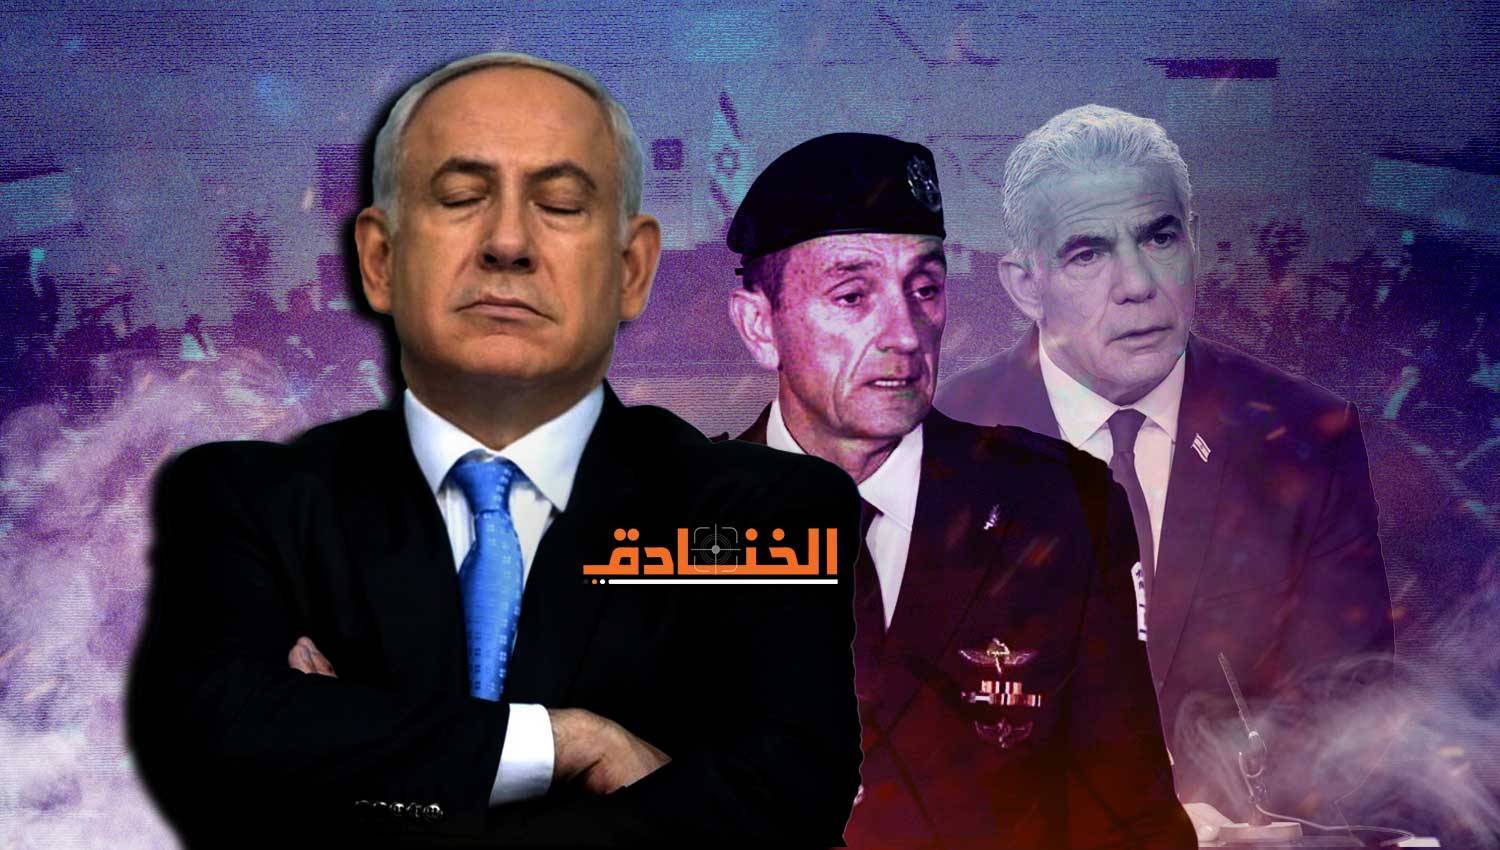 صراخ وفوضى في مجلس الوزراء الإسرائيلي.. ما القصة؟